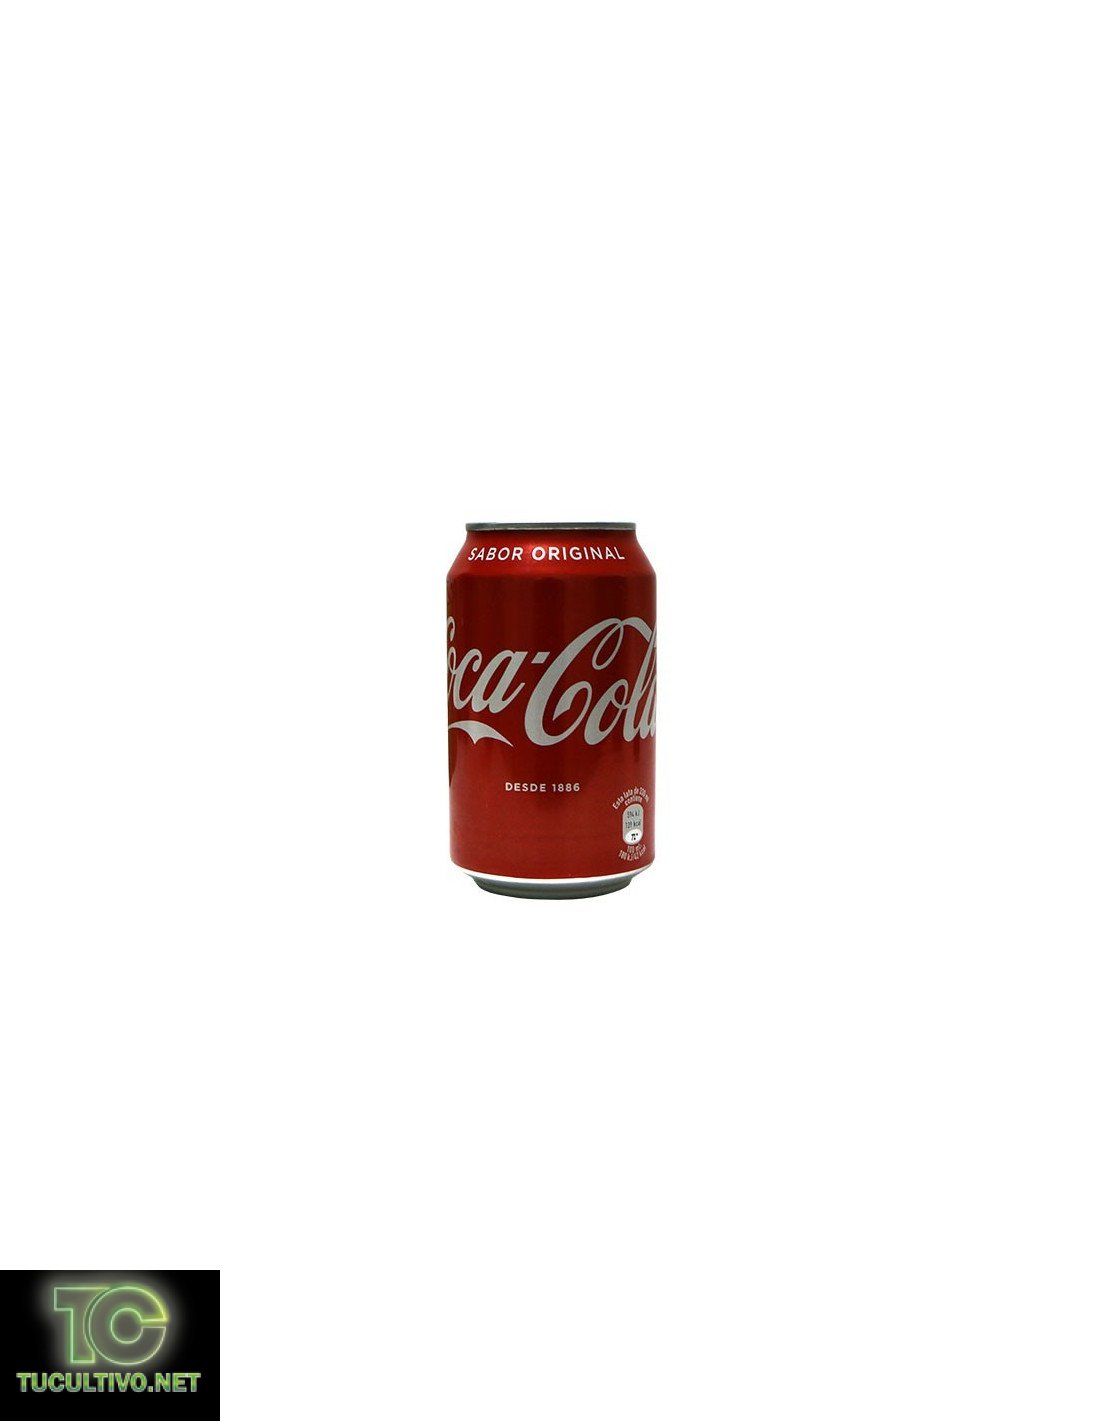 Bote de Cocacola camuflaje en español